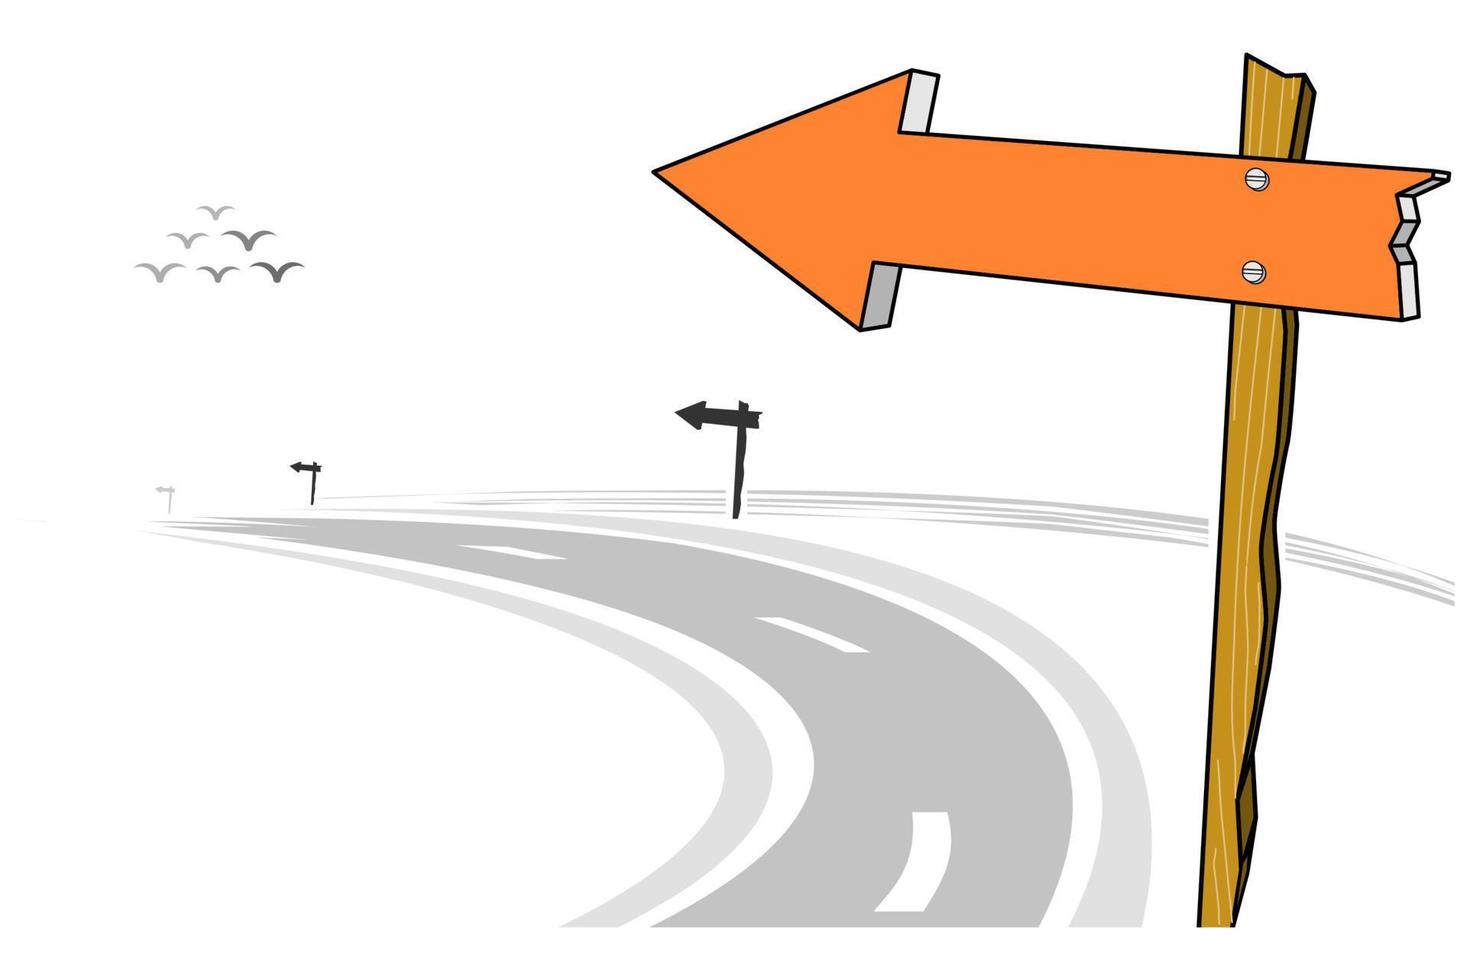 poste de sinal de seta de madeira na estrada, estrada curva à esquerda, ilustração vetorial vetor